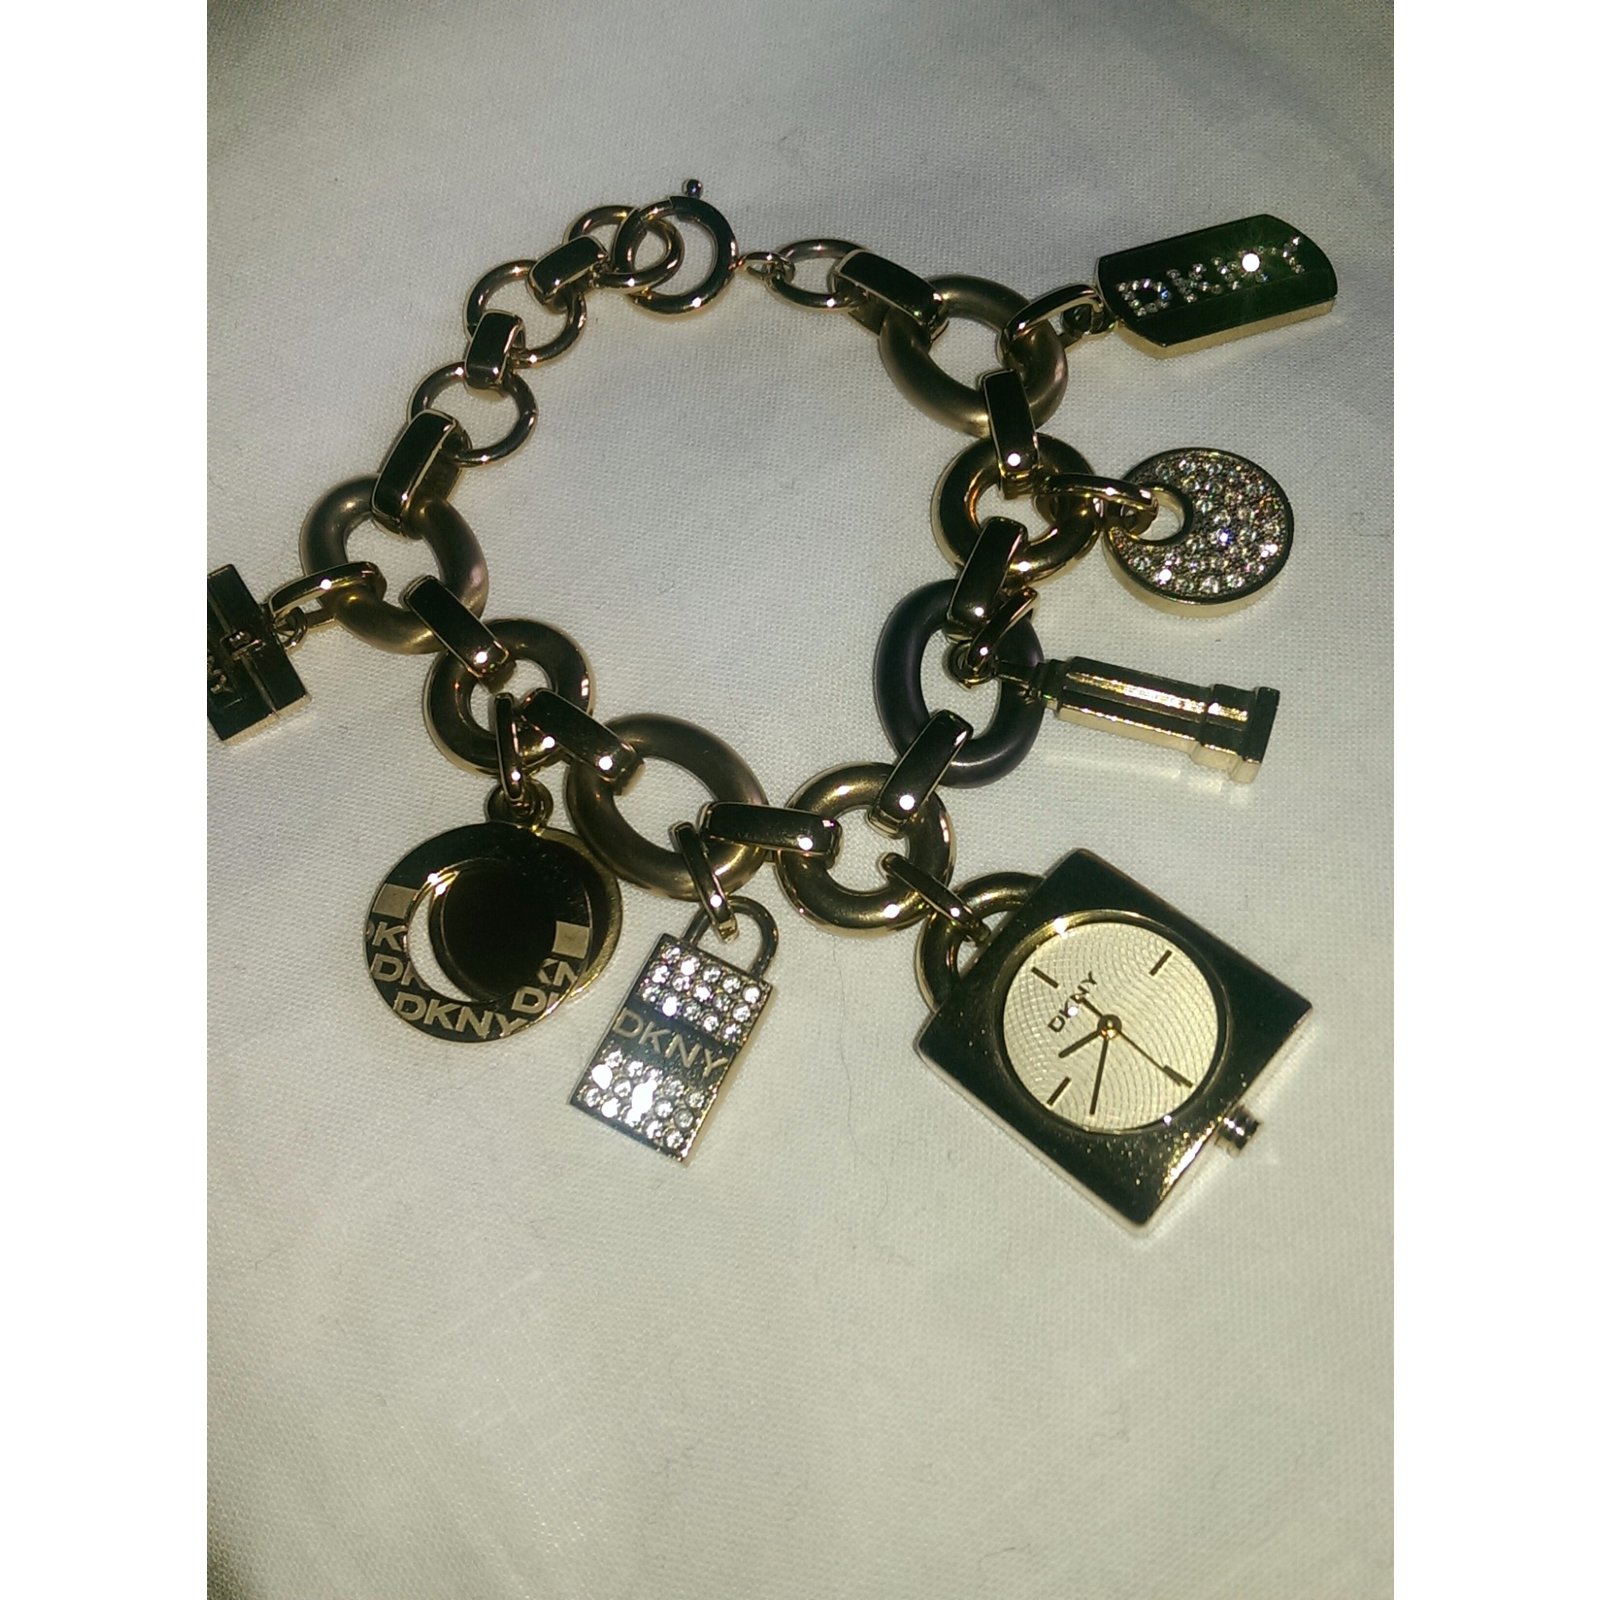 DKNY Ladies Fancy Bracelet Watch NY3951 | eBay